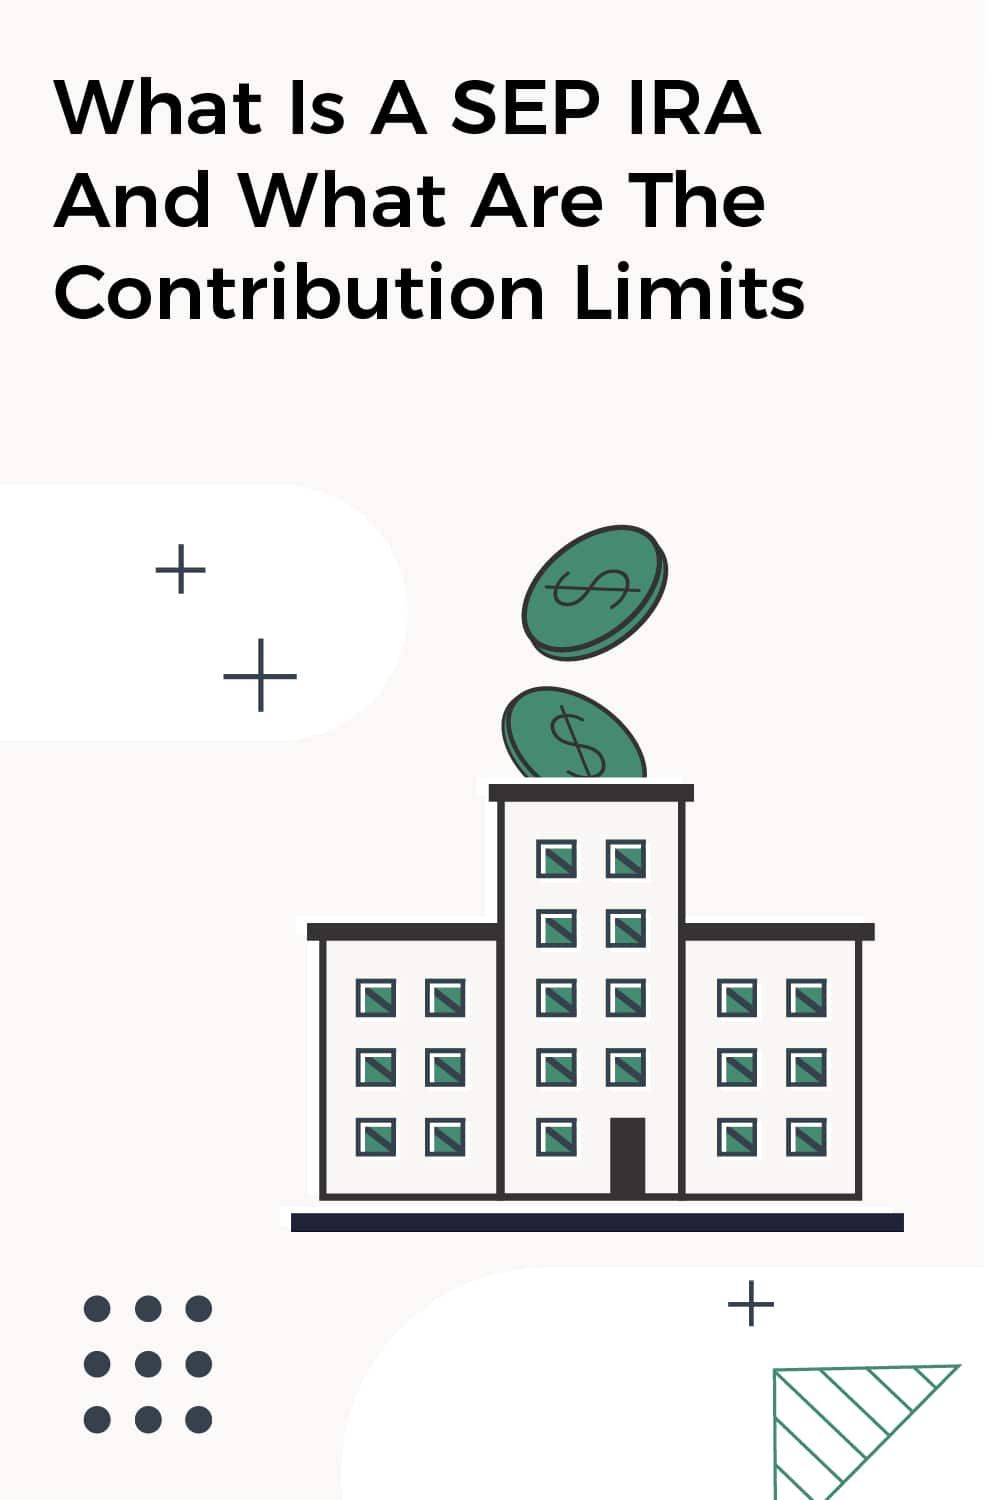 SEP IRA contribution limits